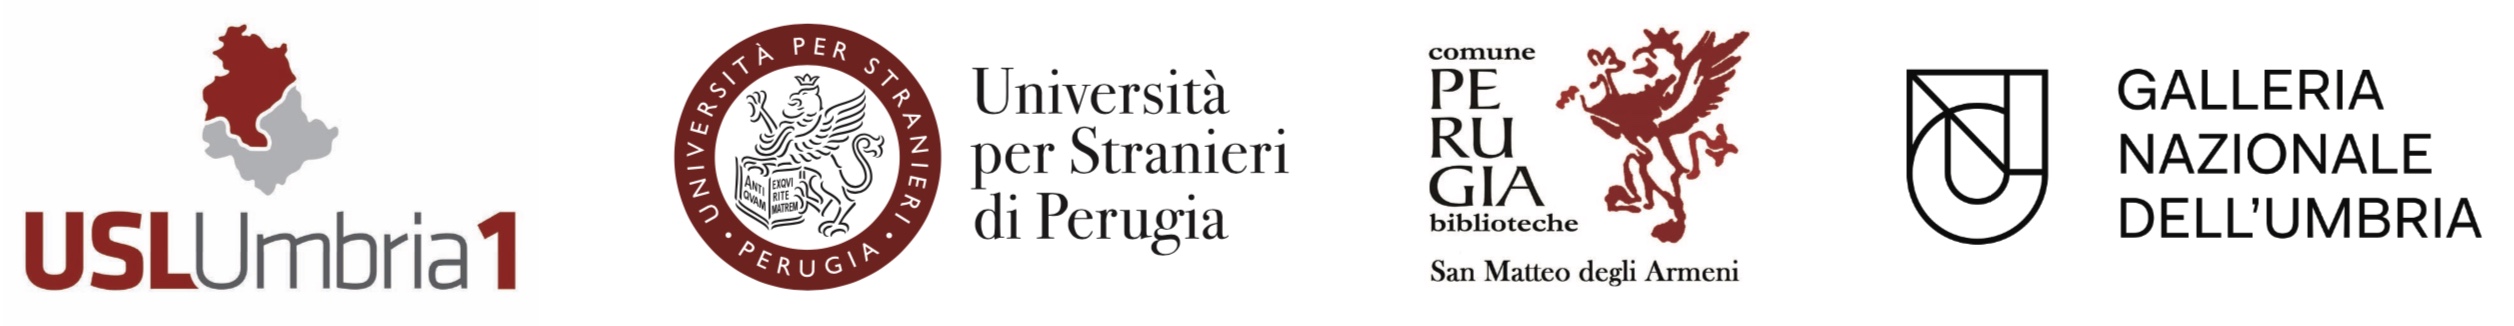 loghi istituzioni partner: USL UMBRIA - Università per Stranieri - Biblioteca San Matteo degli Armeni - Galleria Nazionale dell'Umbria